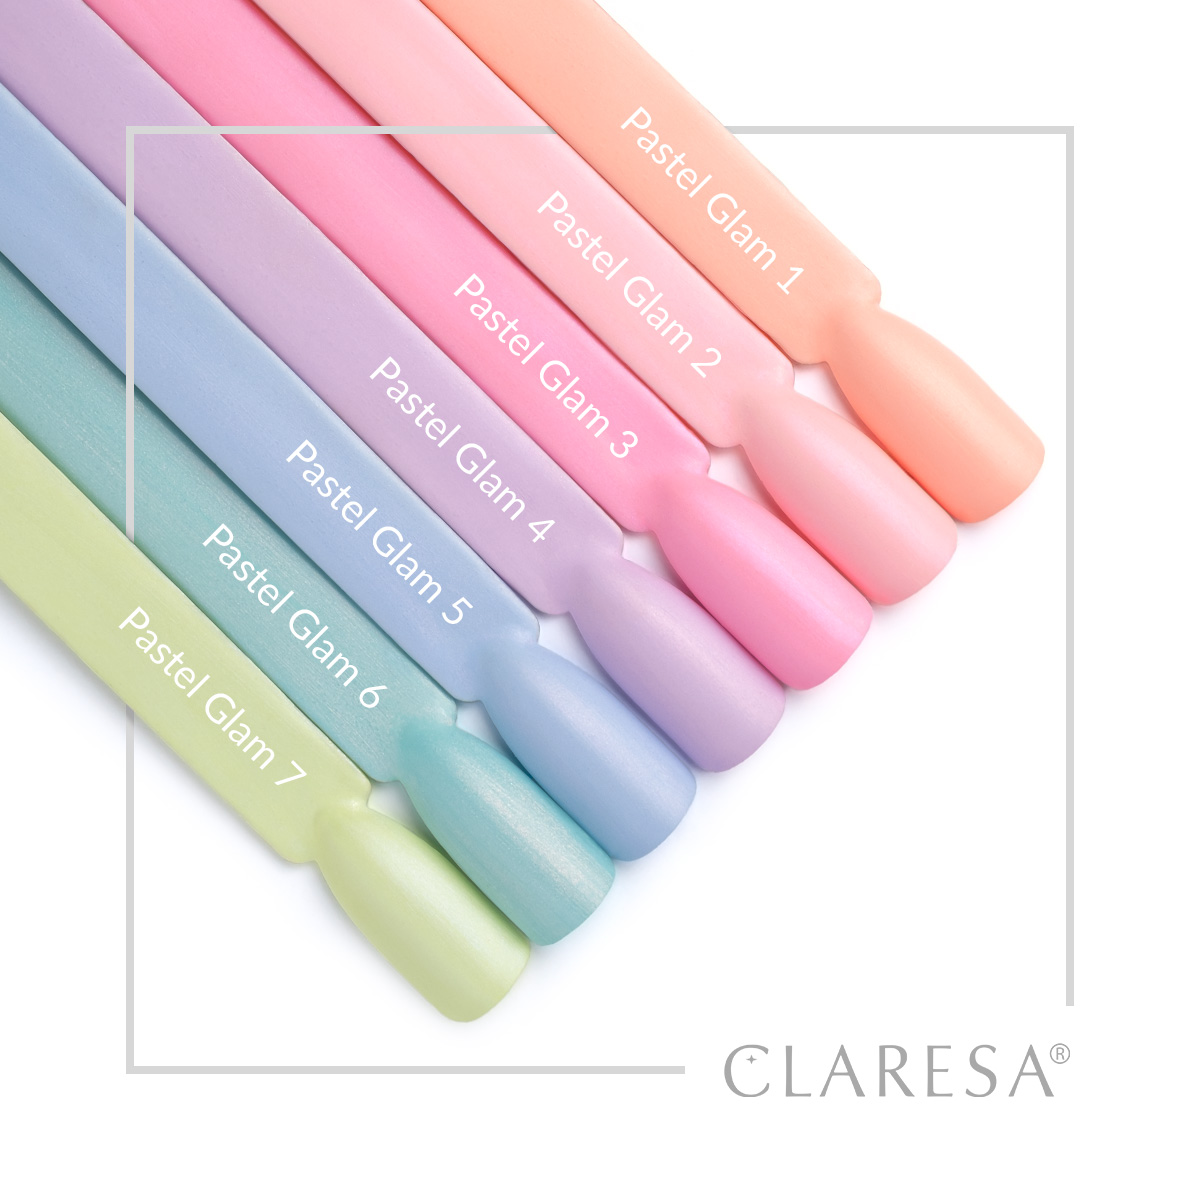 CLARESA UV/LED gél lakk 5g - Pastel Glam 1